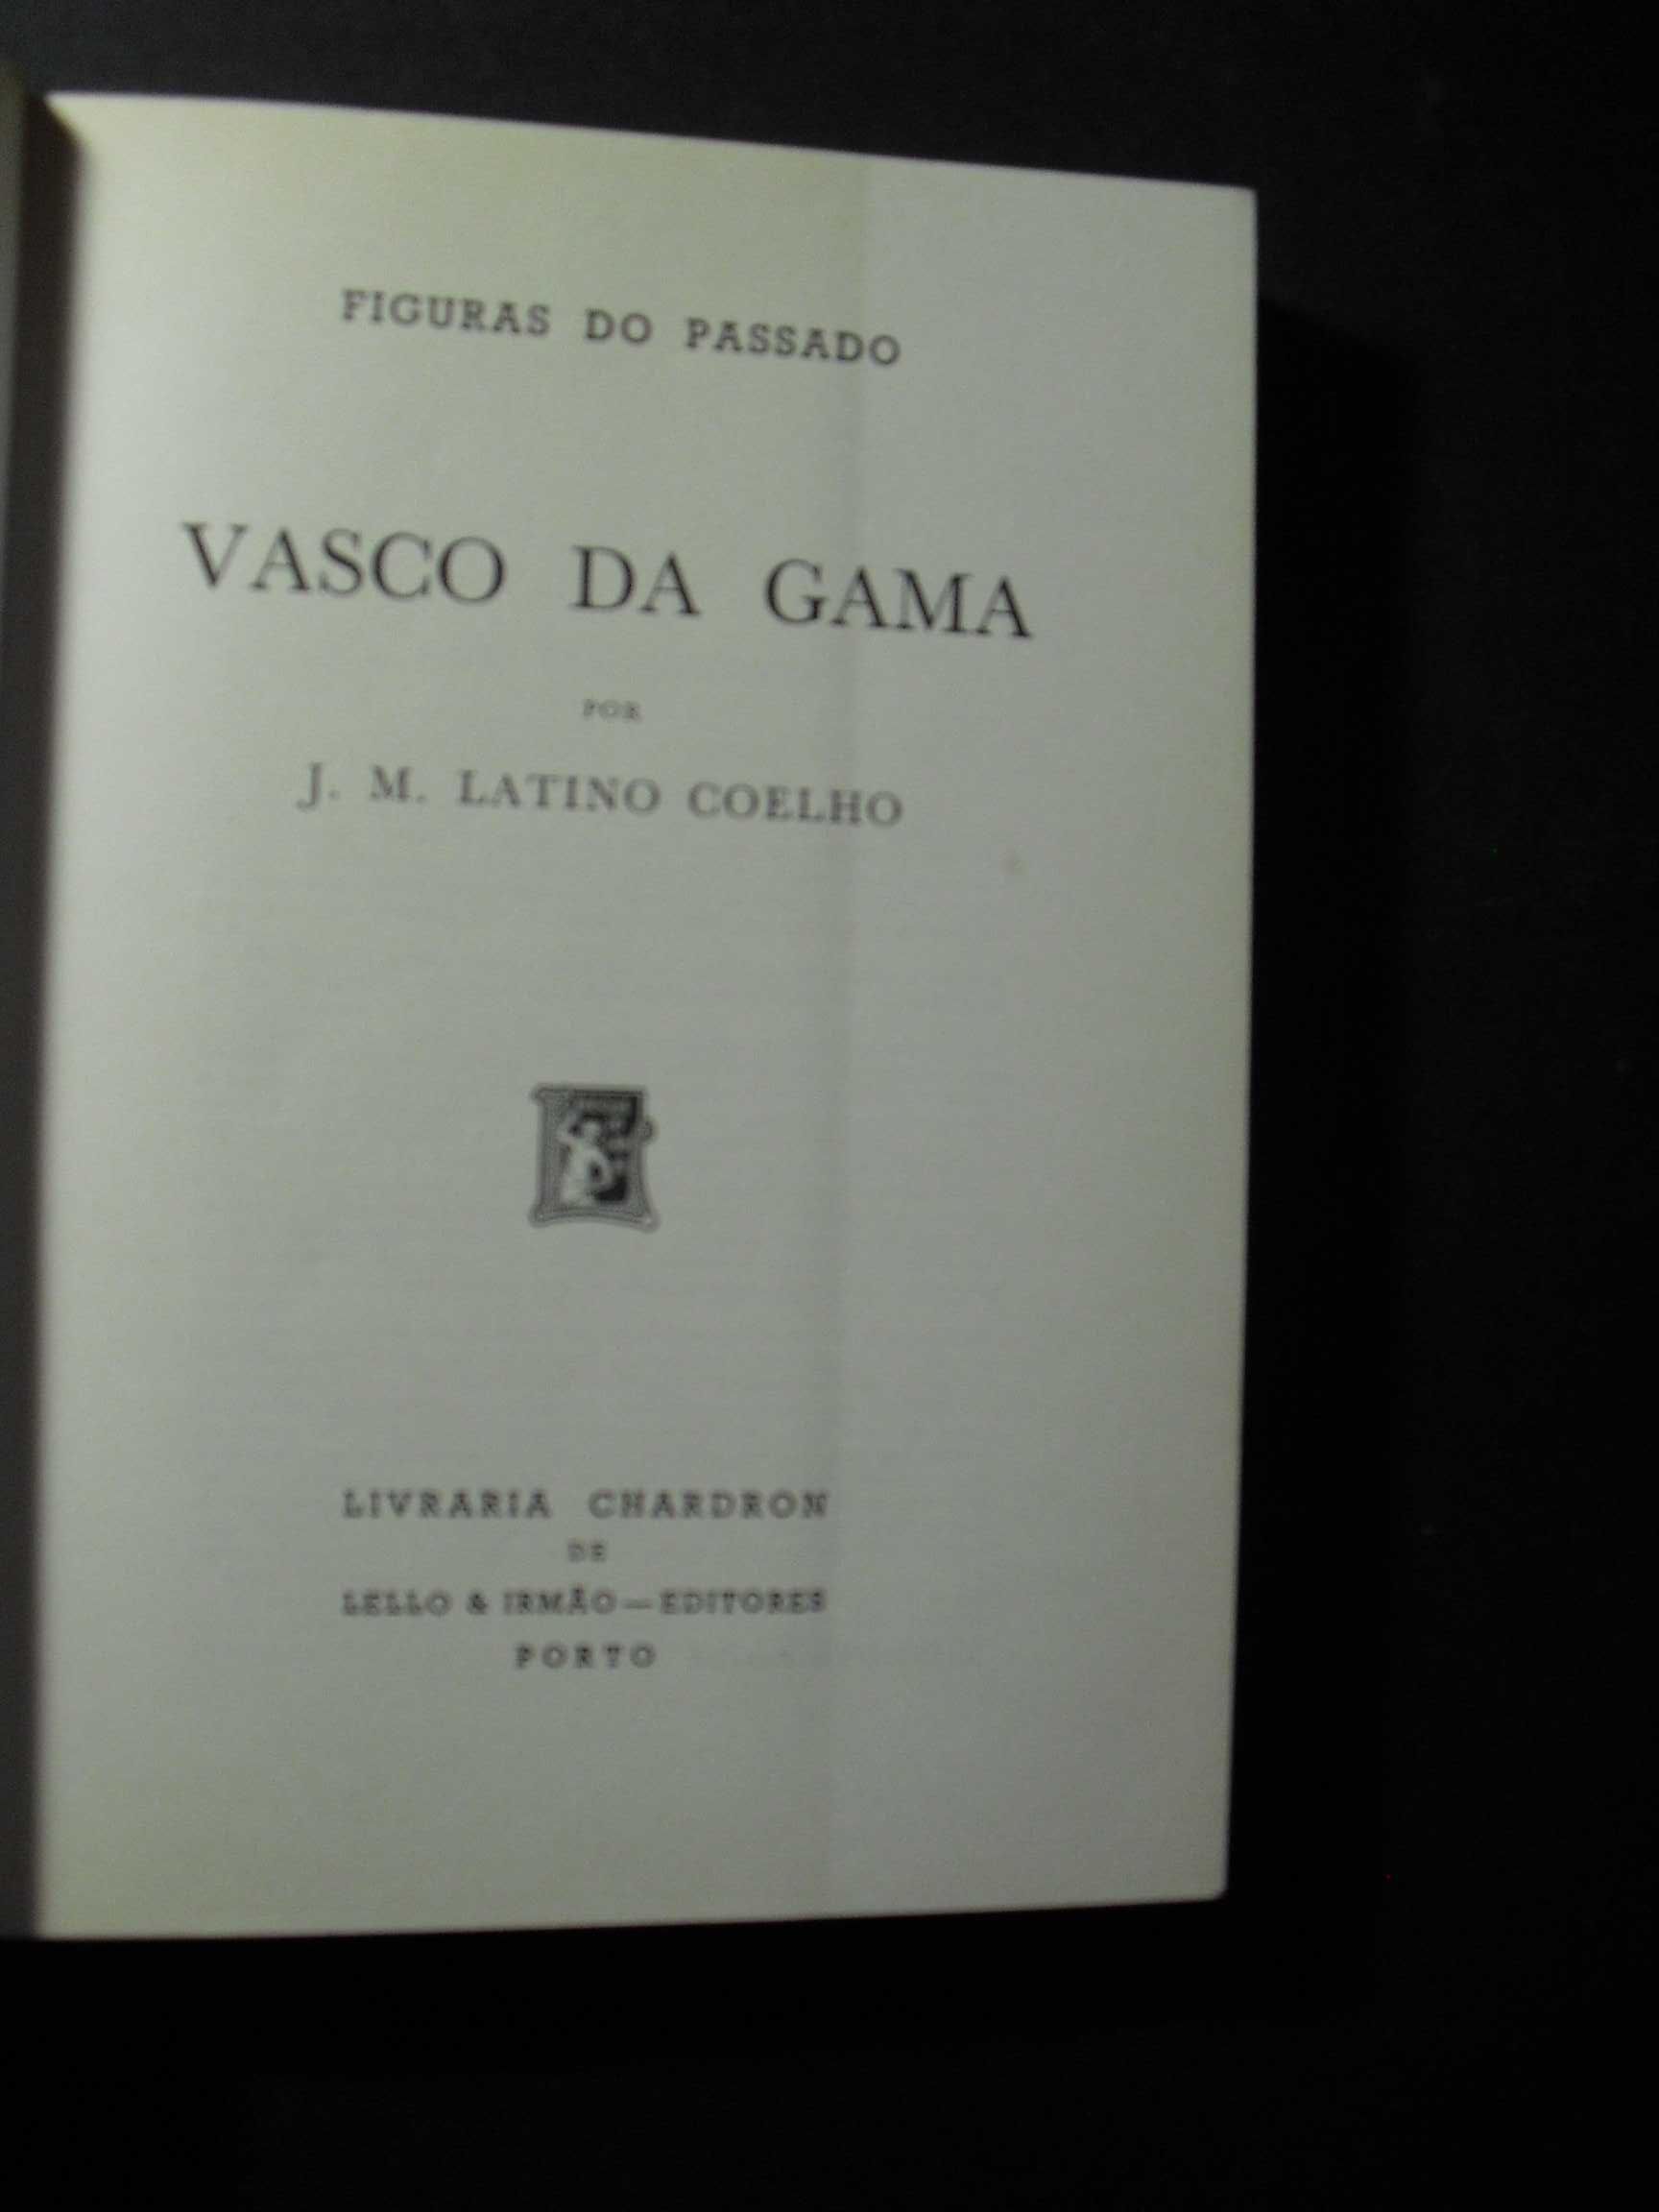 Coelho (J.M.Latino);Vasco da Gama